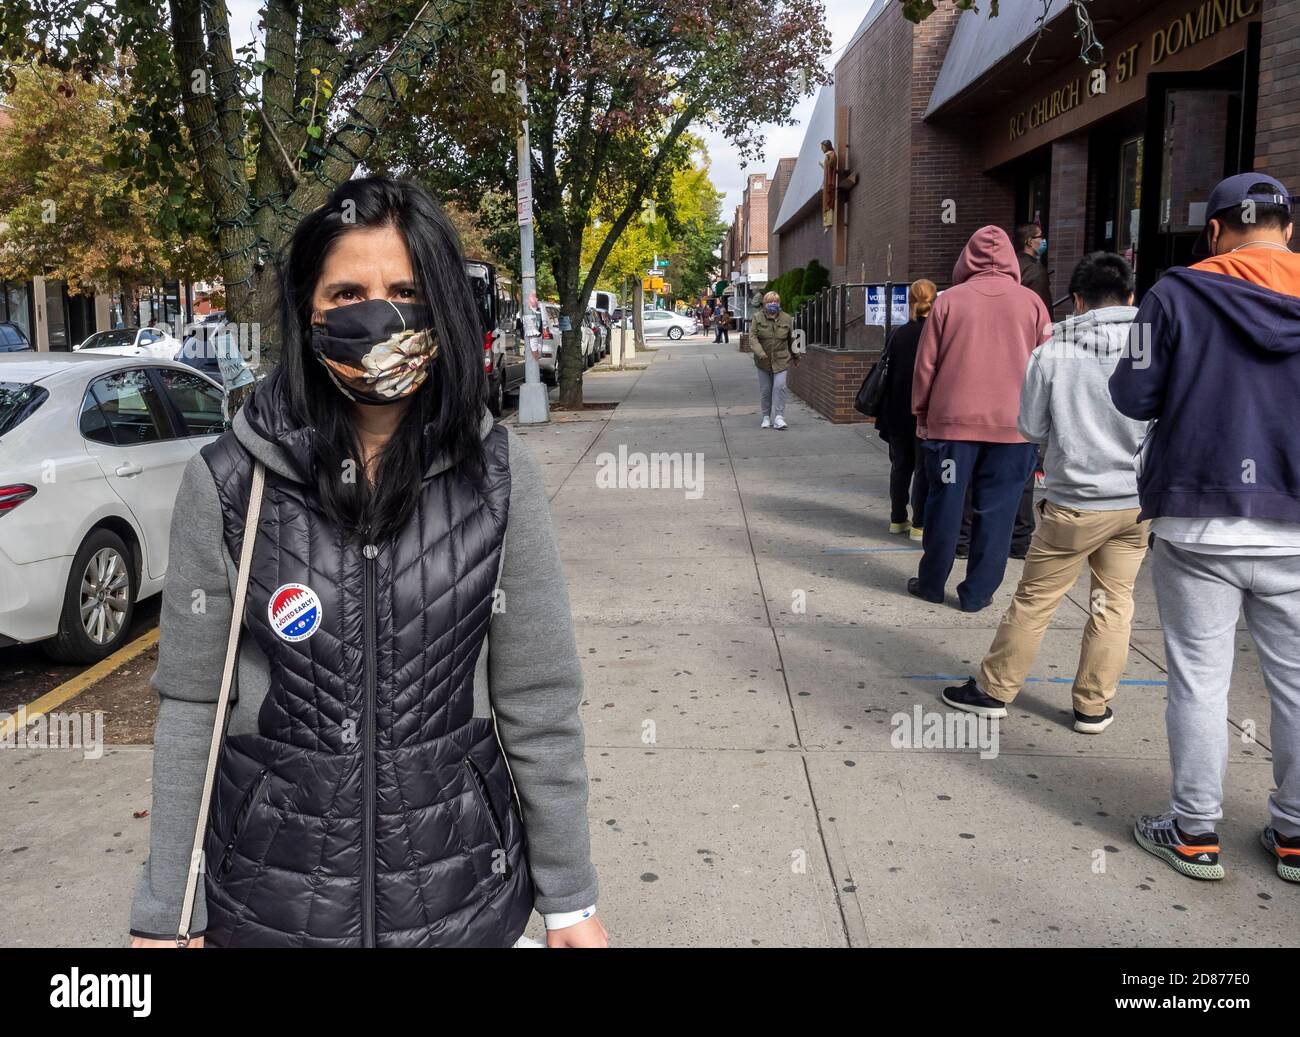 Brooklyn, NY, EE.UU. - 27 de octubre de 2020: Los votantes salen del sitio de votación después de que ellos emitieron sus votos para la votación general temprana en la Iglesia Católica de St. Dominic, Bro Foto de stock